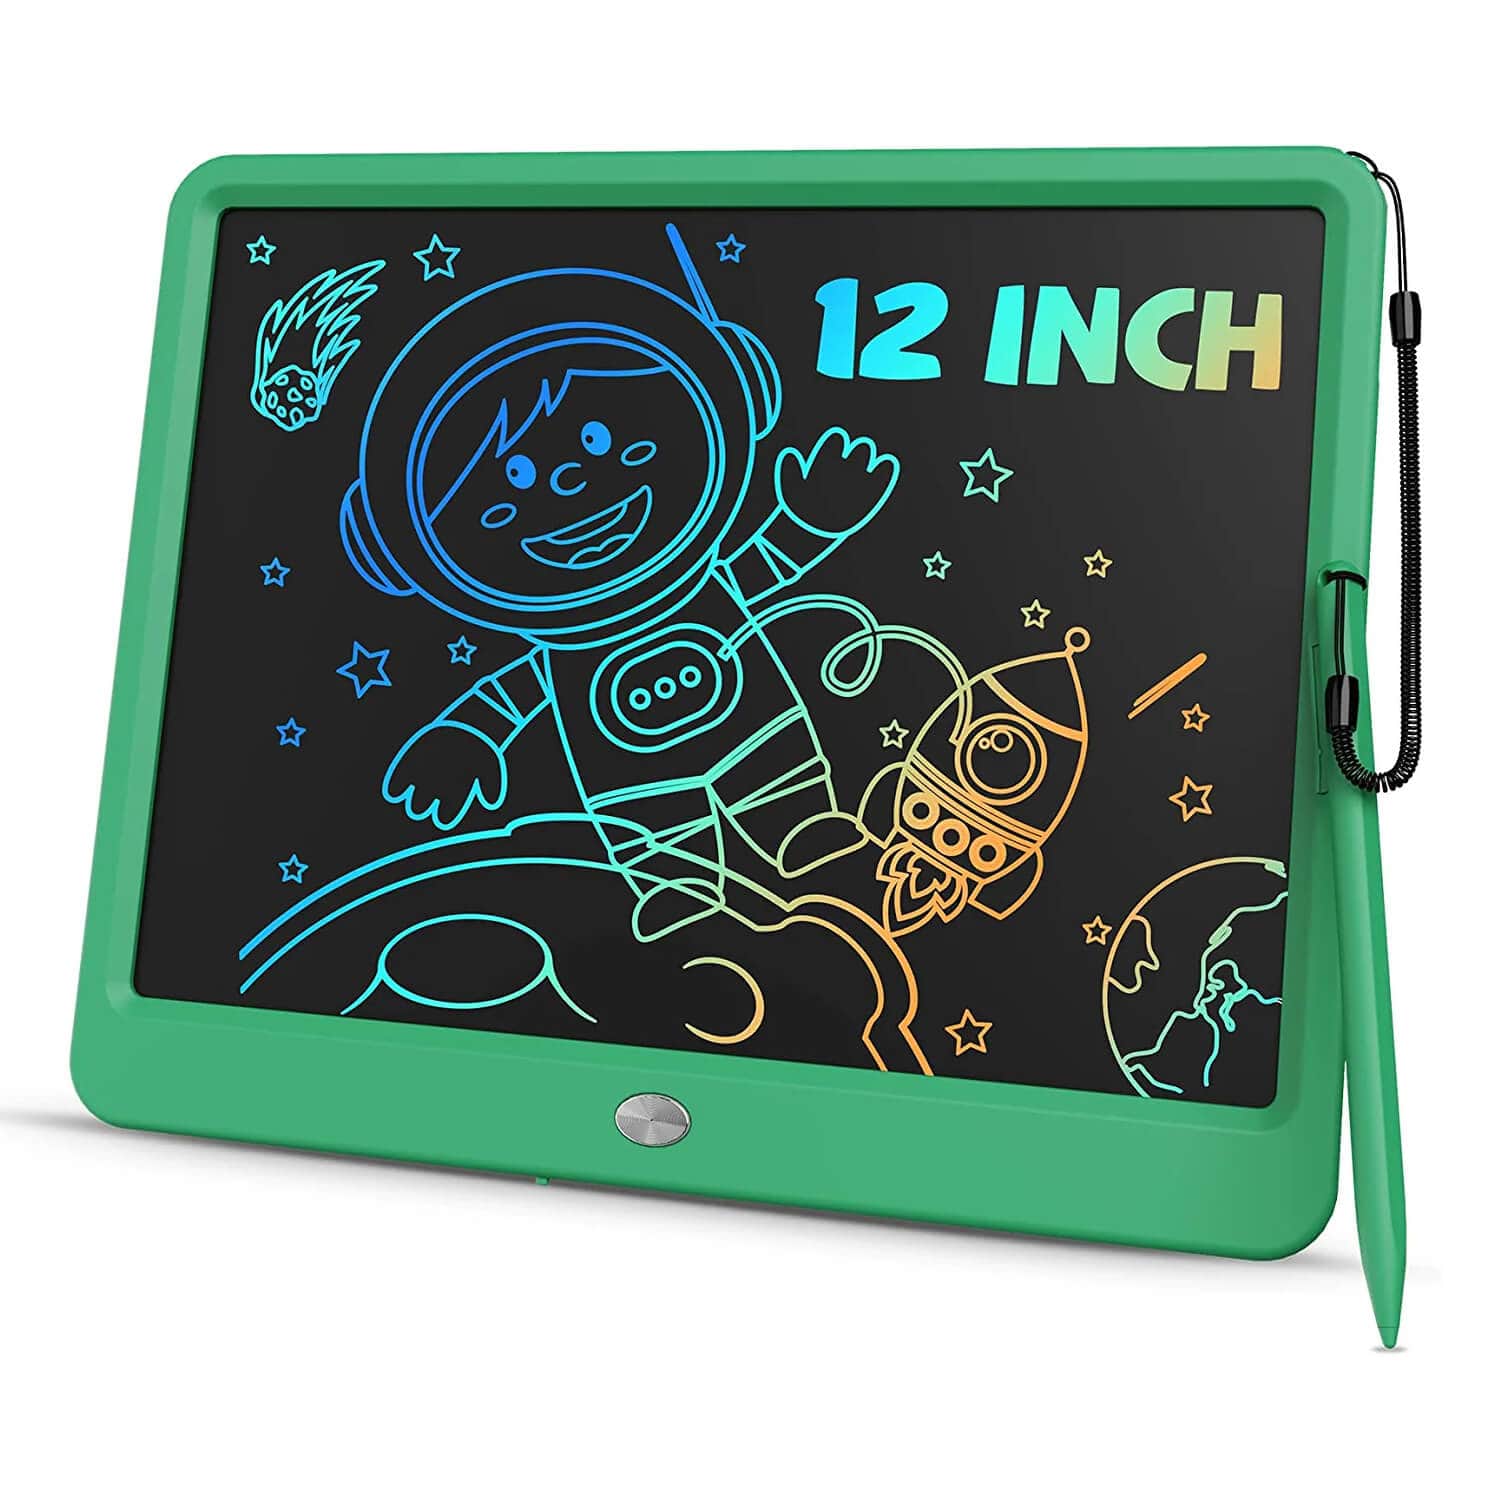 TEKFUN Large Screen 12inch LCD Writing Tablet with Anti-Lost Stylus, Erasable Doodle Board No Mess Drawing Pad - Mytekfun